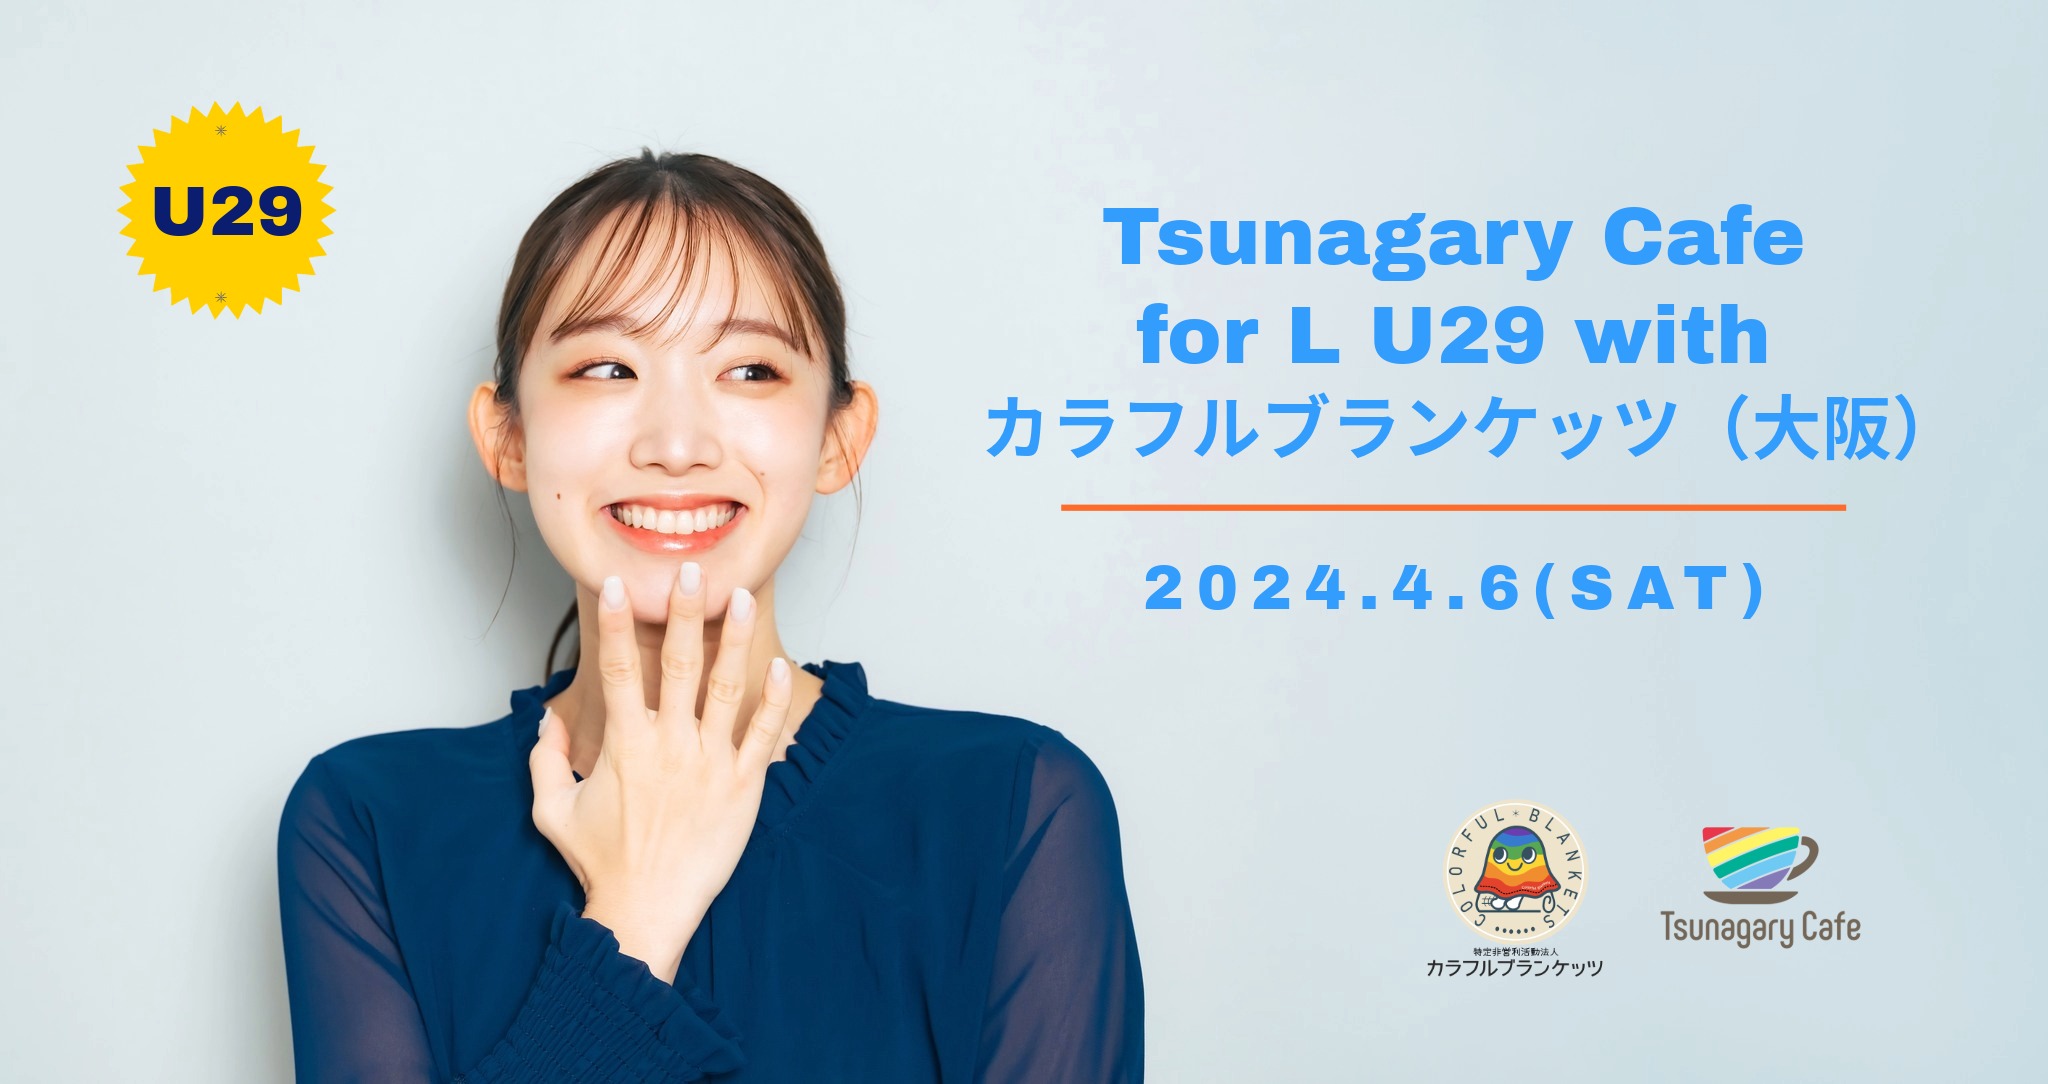 【大阪】Tsunagary Cafe for L U29